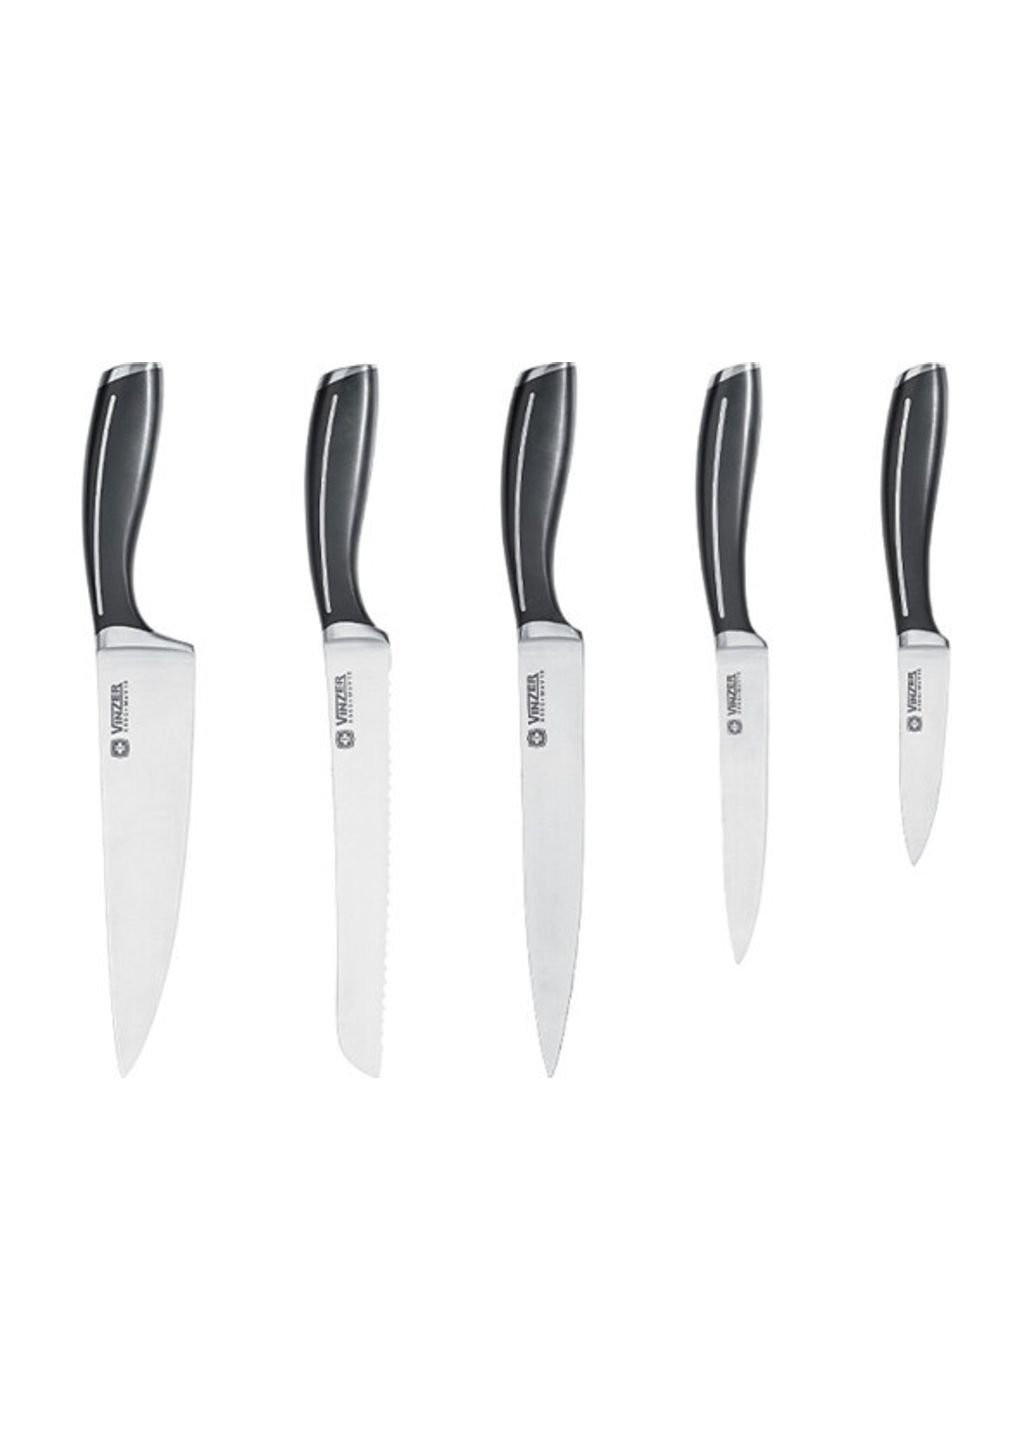 Набор ножей Crystal VZ-50113 6 предметов Vinzer комбинированные,